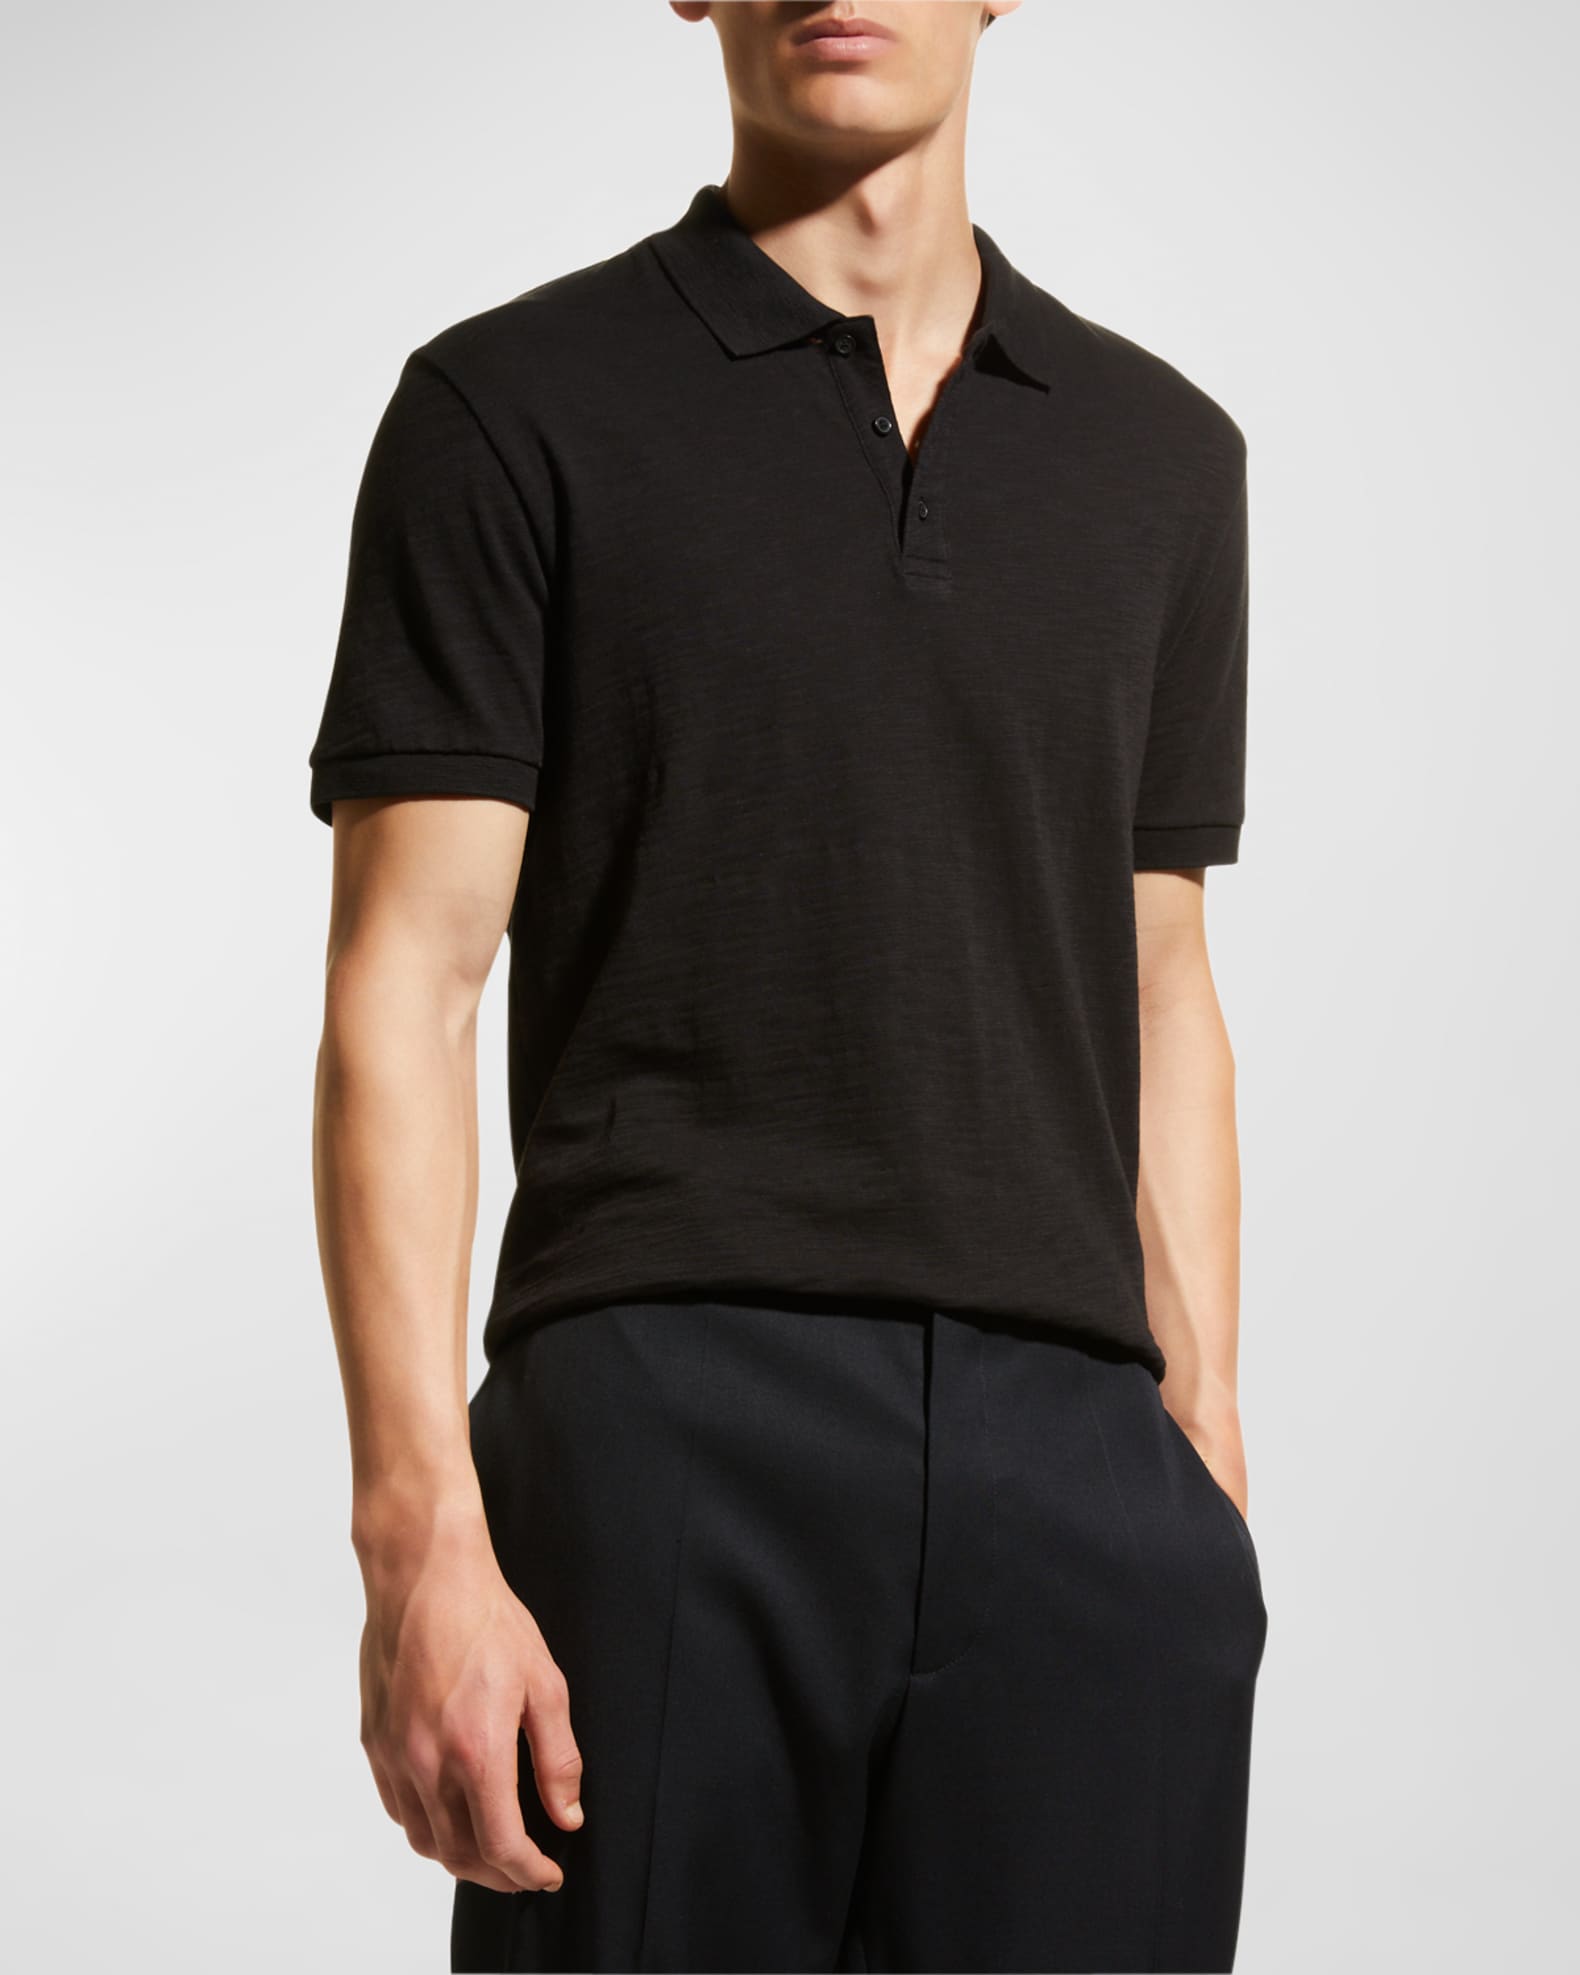 Louis Vuitton Classic Short Sleeve Pique Polo BLACK. Size M0